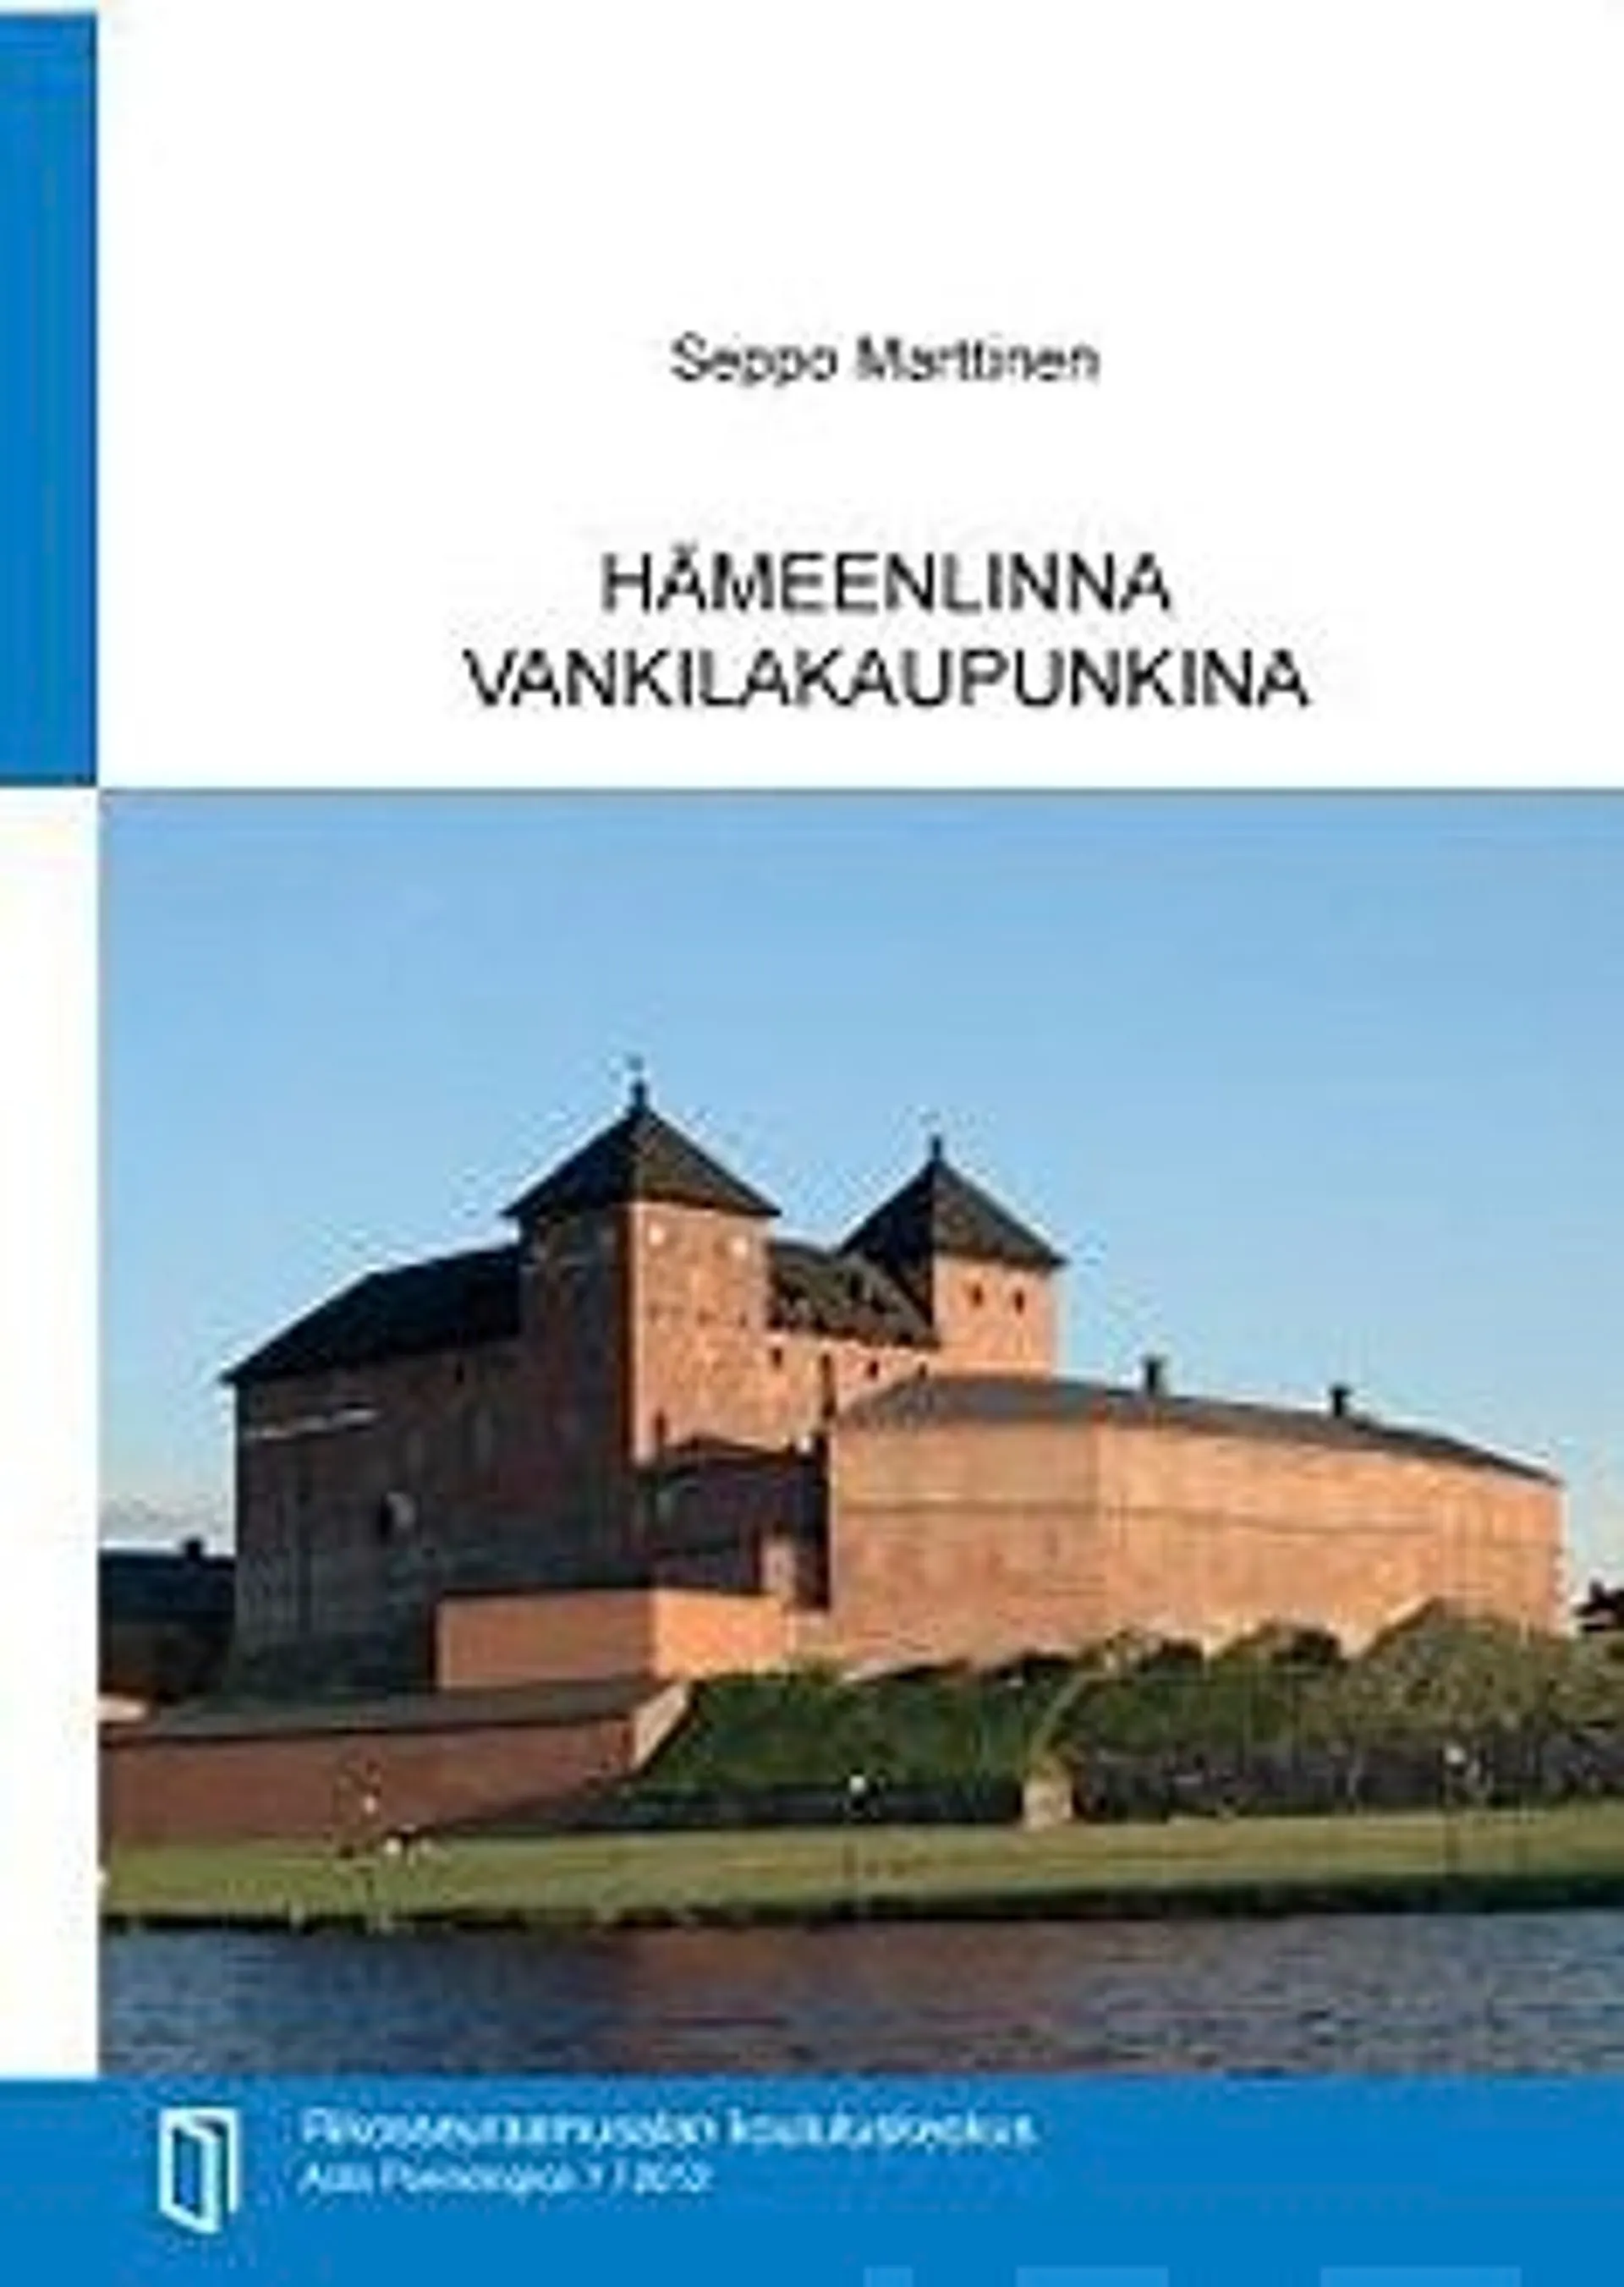 Marttinen, Hämeenlinna vankilakaupunkina